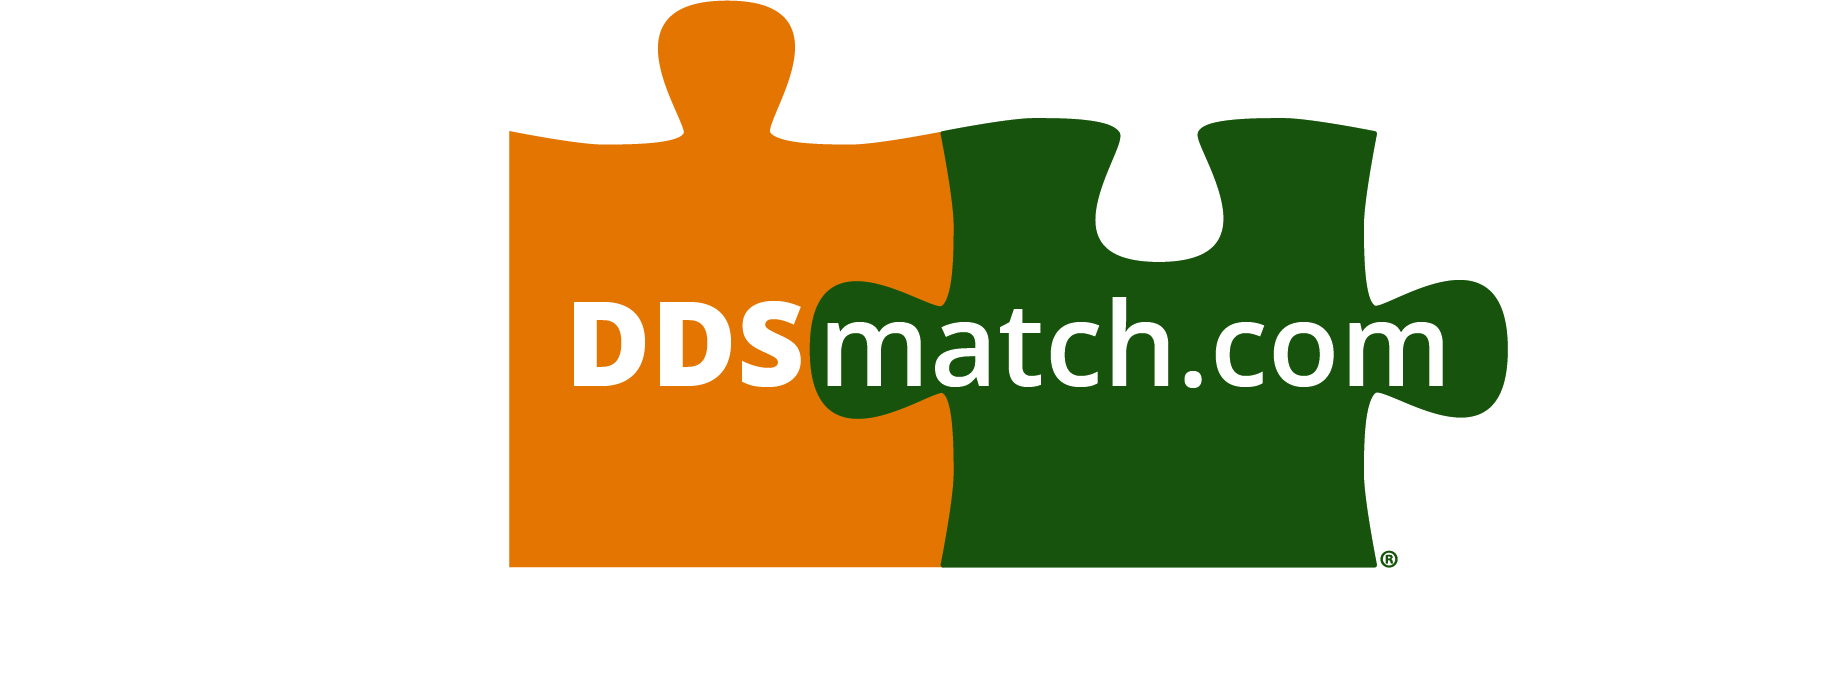 ddsmatch.com - Matt Hamblin Logo